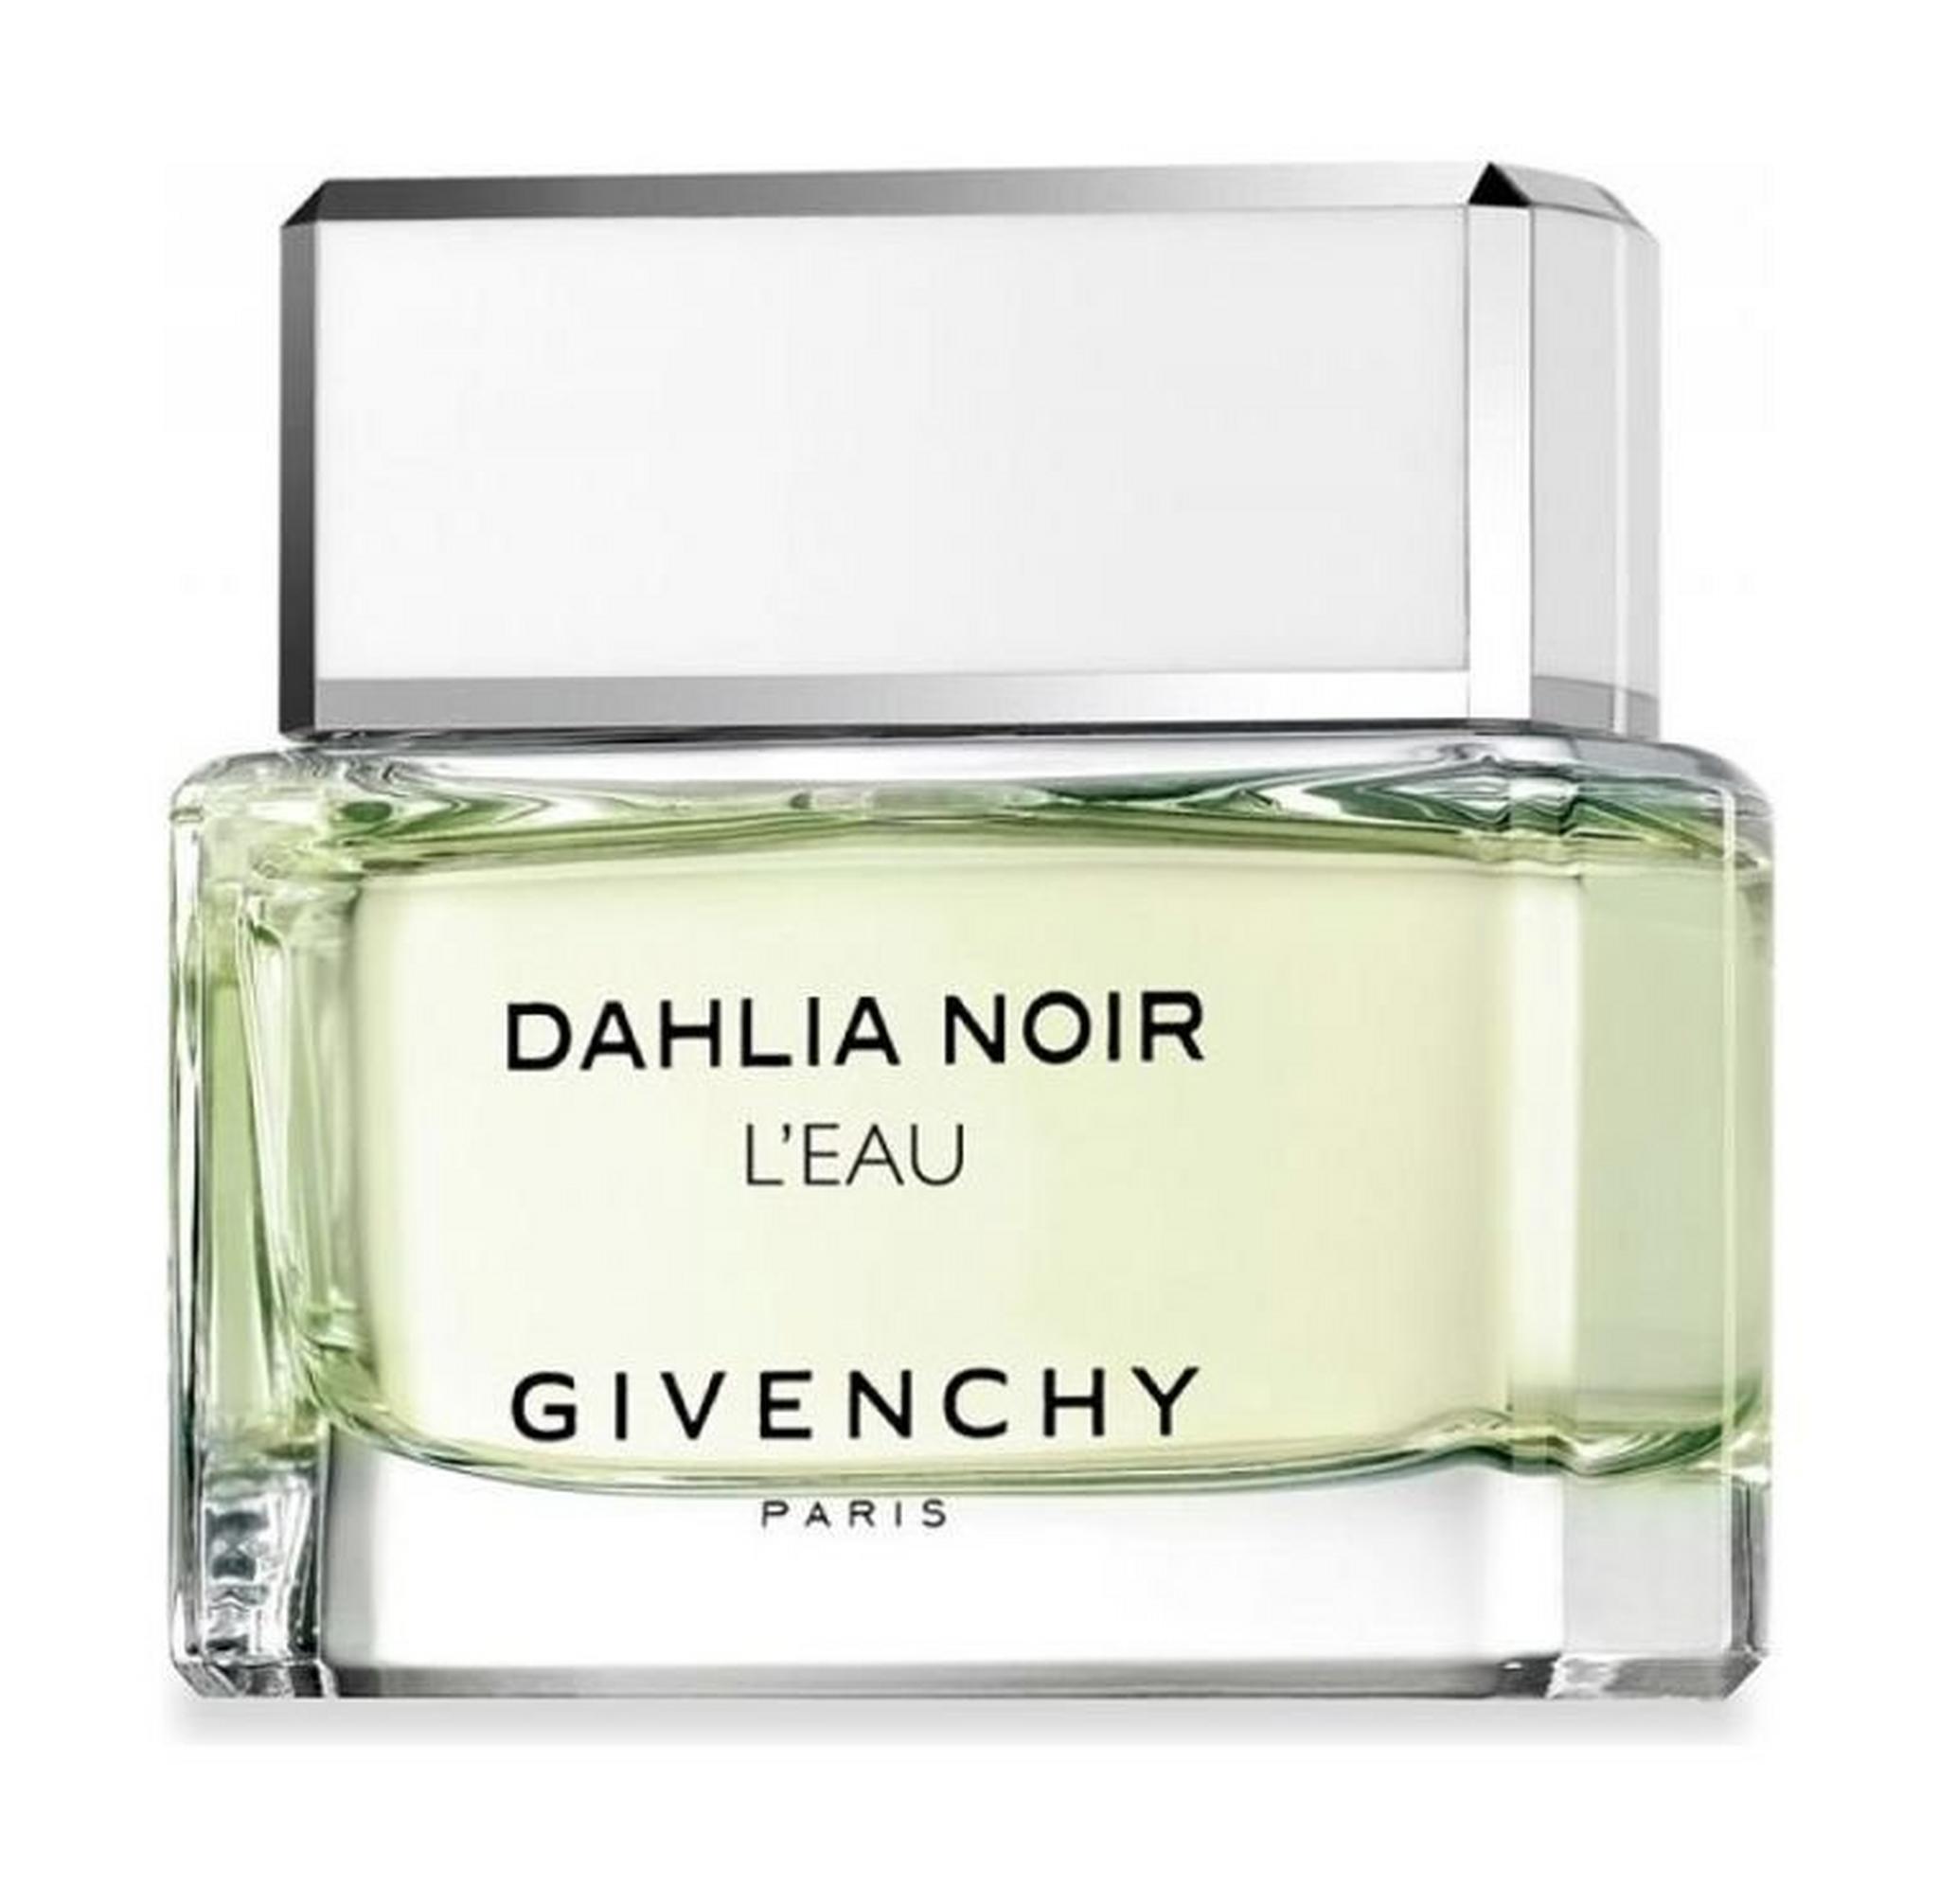 Givenchy Dahlia Noir L'eau For Women 75 ml Eau de Toilette